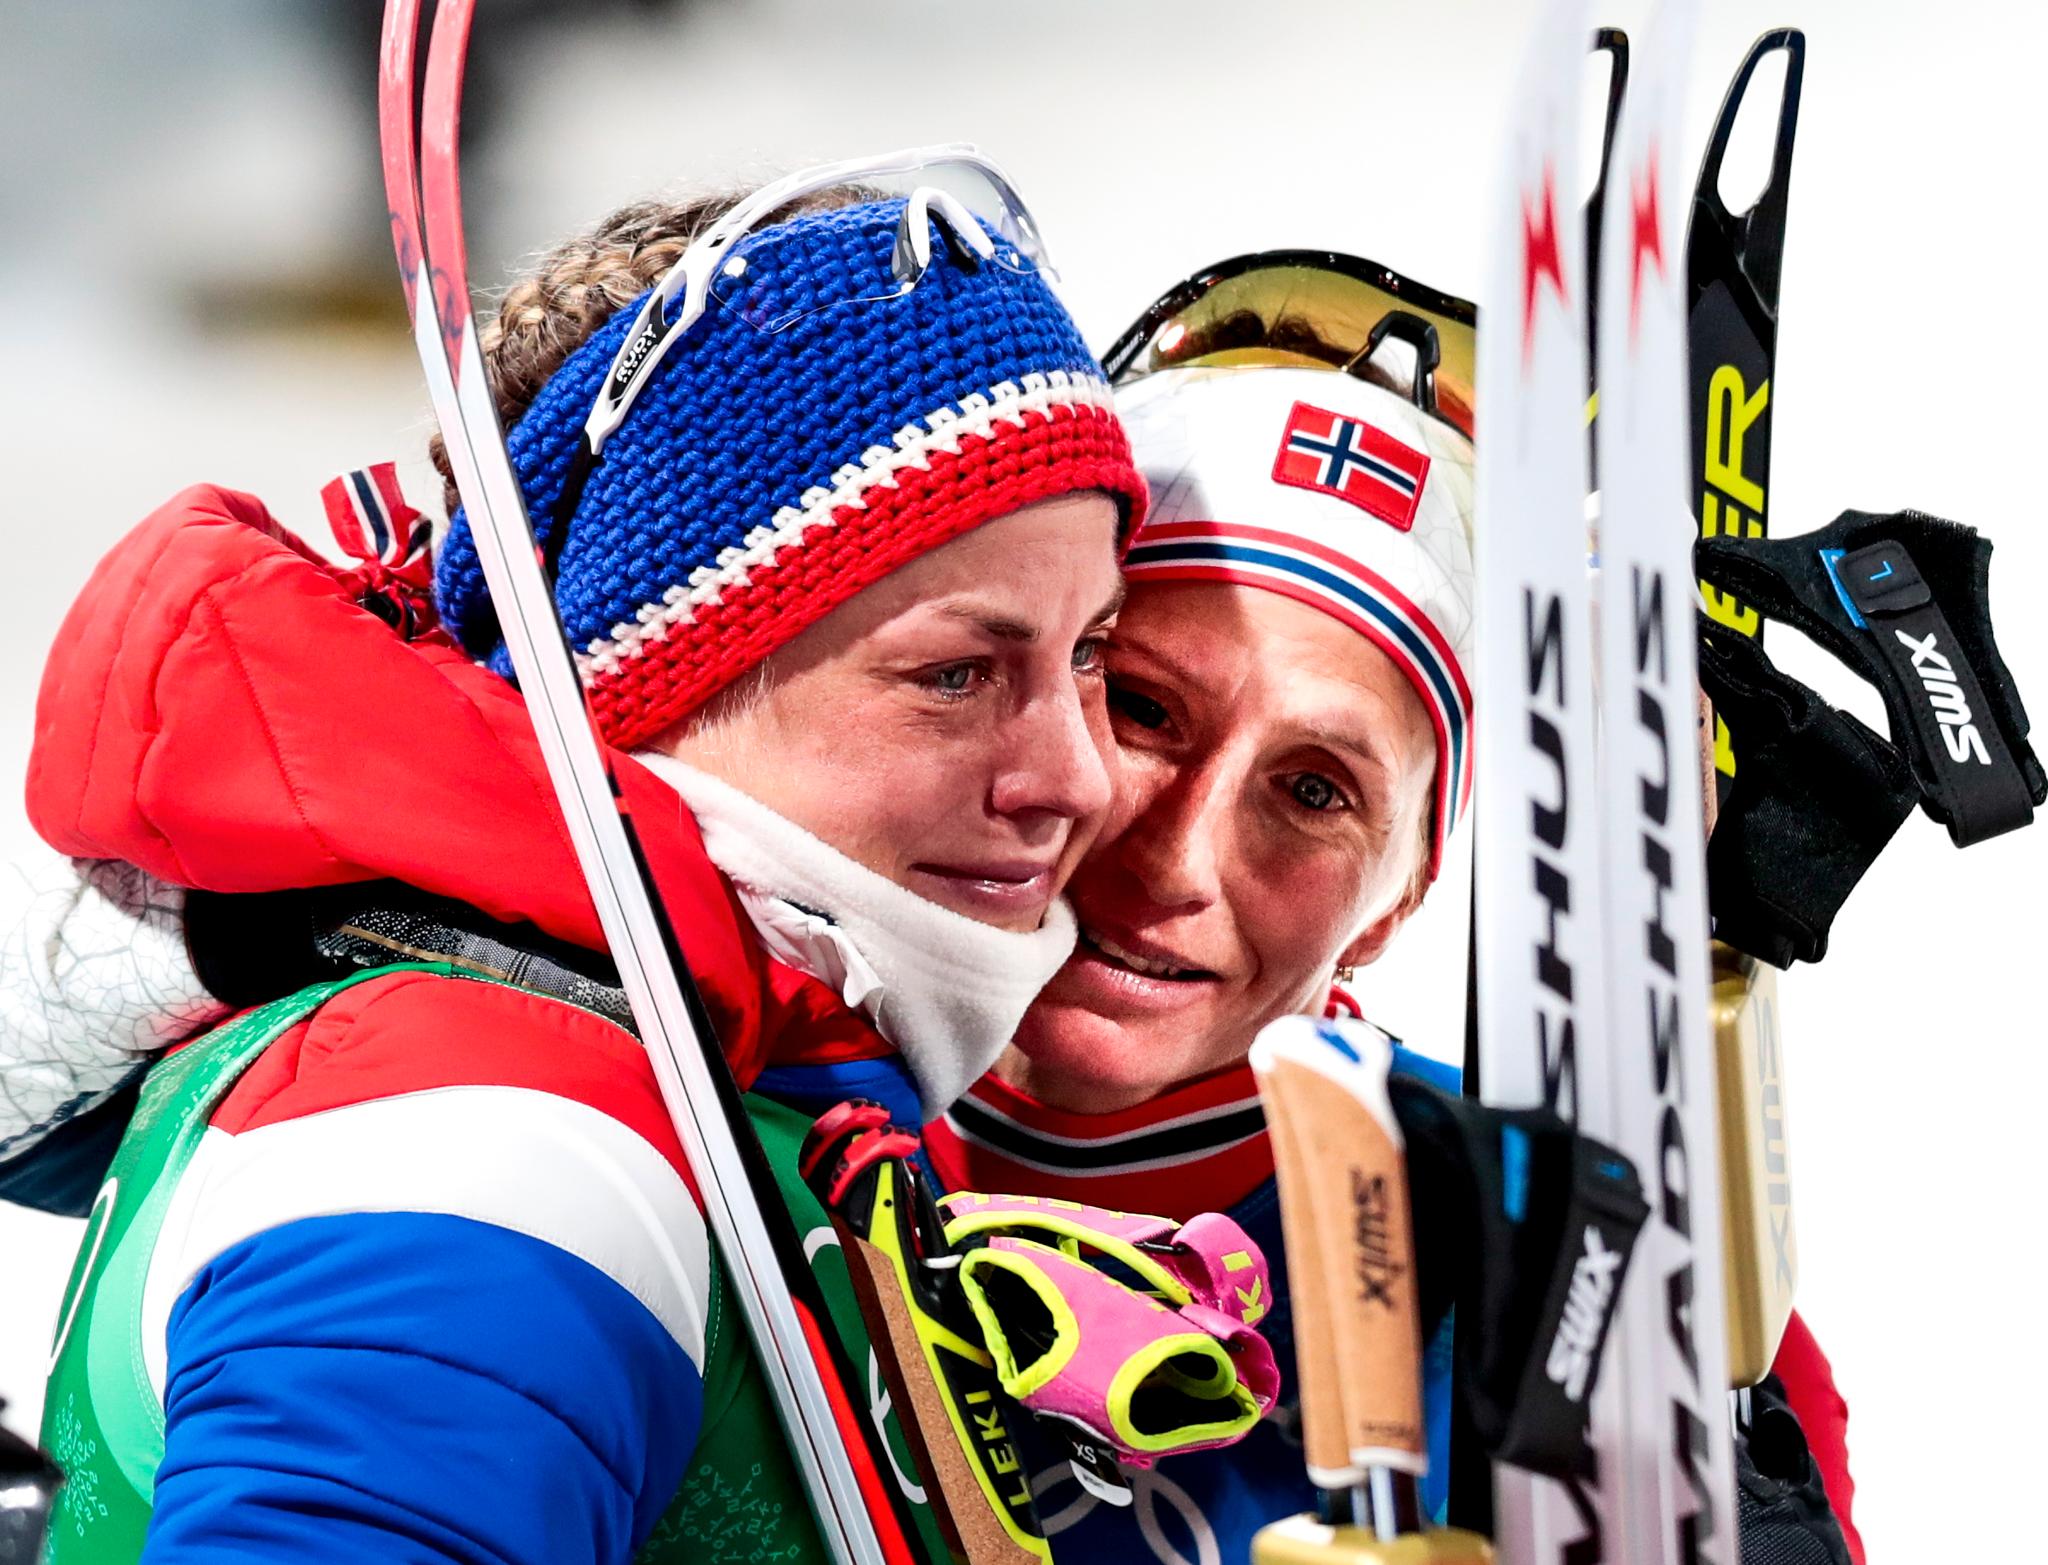 Astrid Uhrenholdt Jacobsen tok OL-gull med det norske laget i Pyeongchang i 2018, men var nesten utrøstelig etterpå. Hun hadde gått en relativt svak etappe og trodde rett og slett at hun hadde ødelagt for laget. Her er det Marit Bjørgen som trøster. 